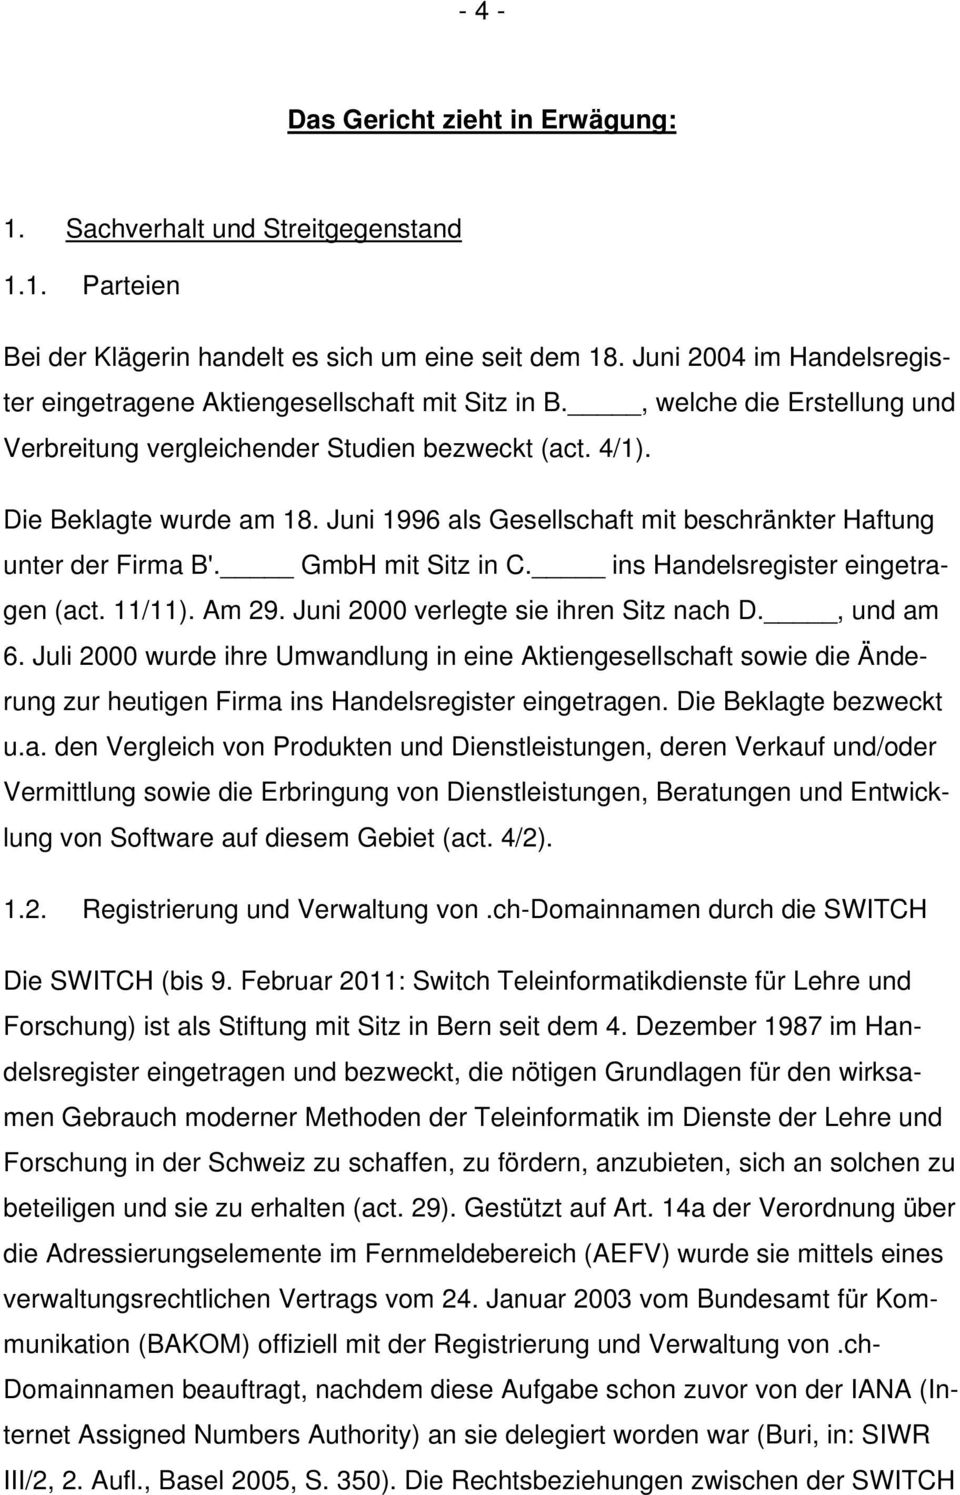 Juni 1996 als Gesellschaft mit beschränkter Haftung unter der Firma B'. GmbH mit Sitz in C. ins Handelsregister eingetragen (act. 11/11). Am 29. Juni 2000 verlegte sie ihren Sitz nach D., und am 6.